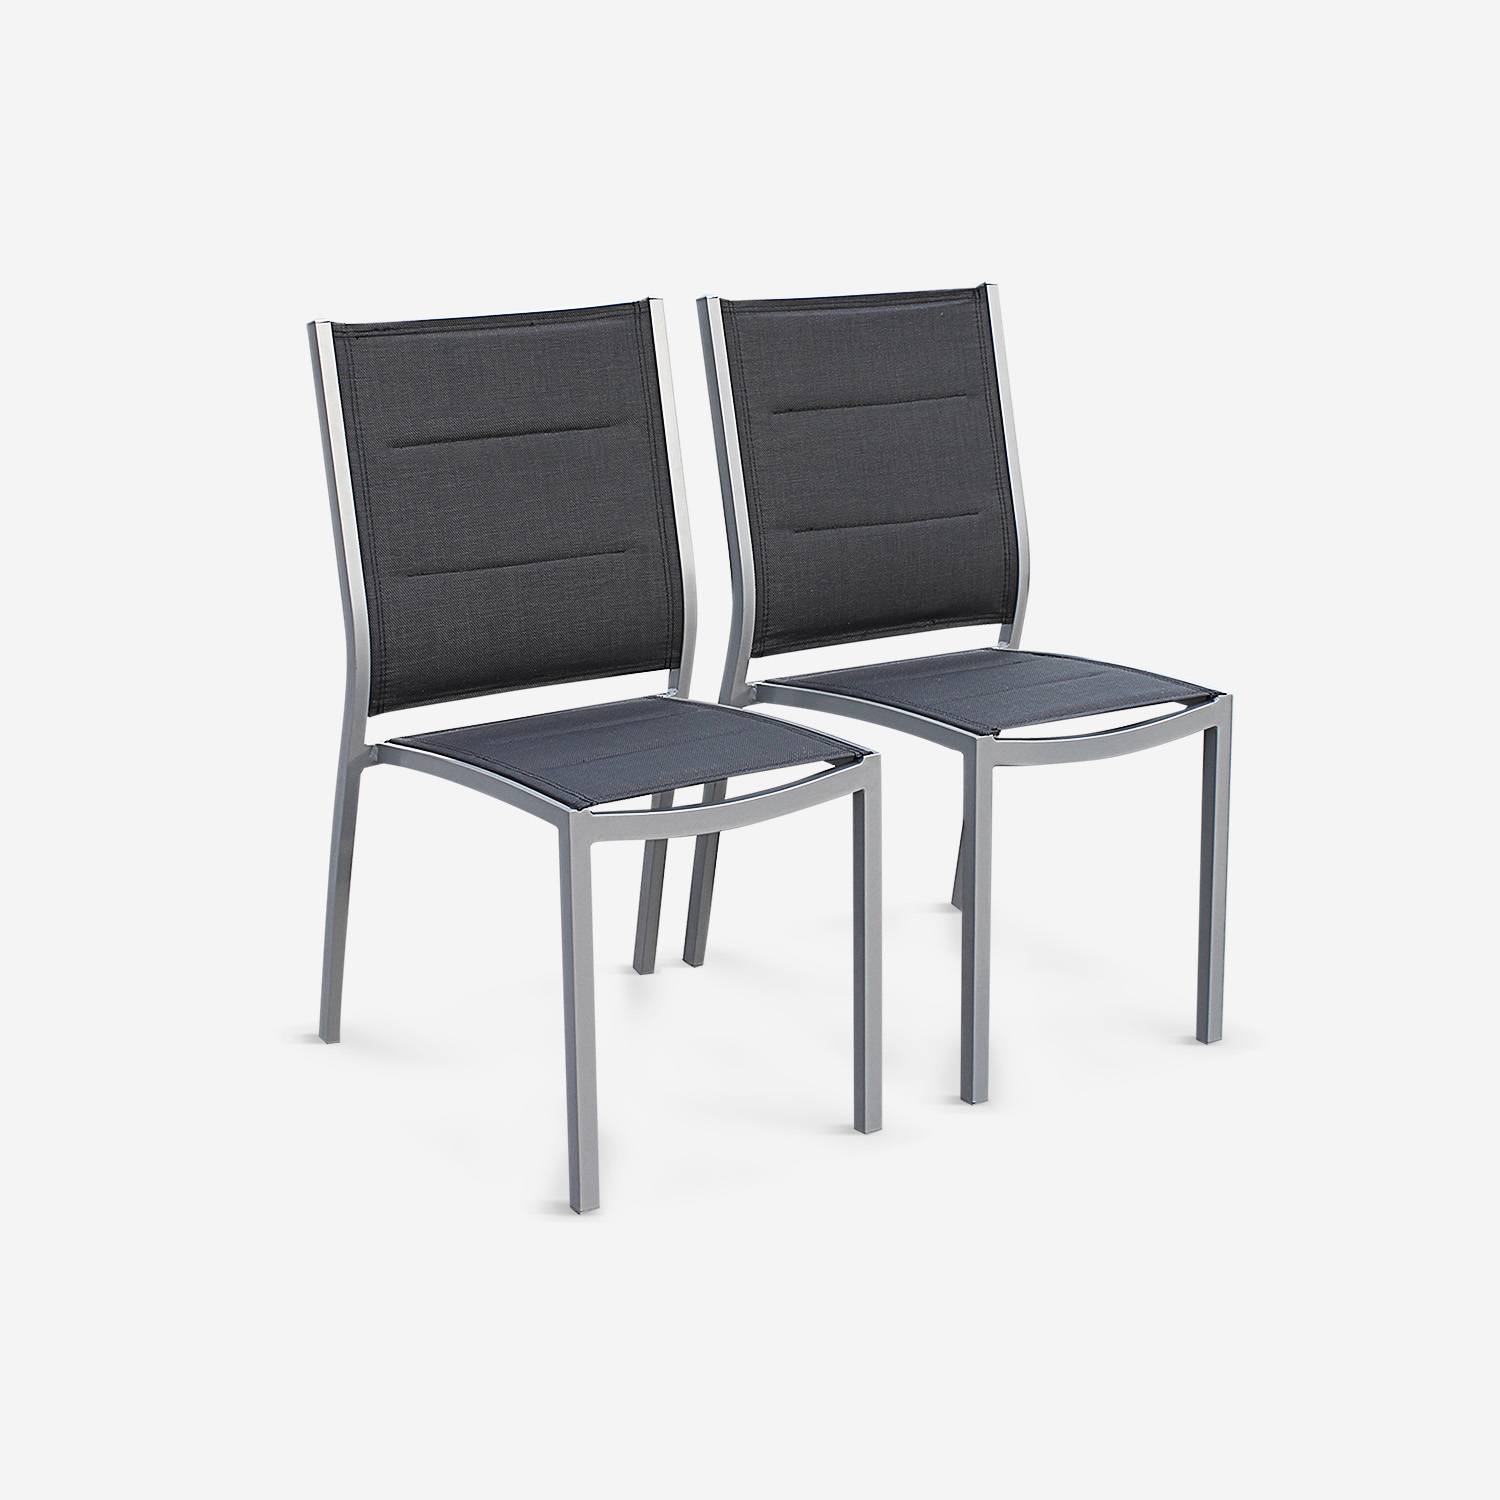 Coppia di sedie Chicago/Odenton in alluminio e textilene colore grigio scuro Photo1